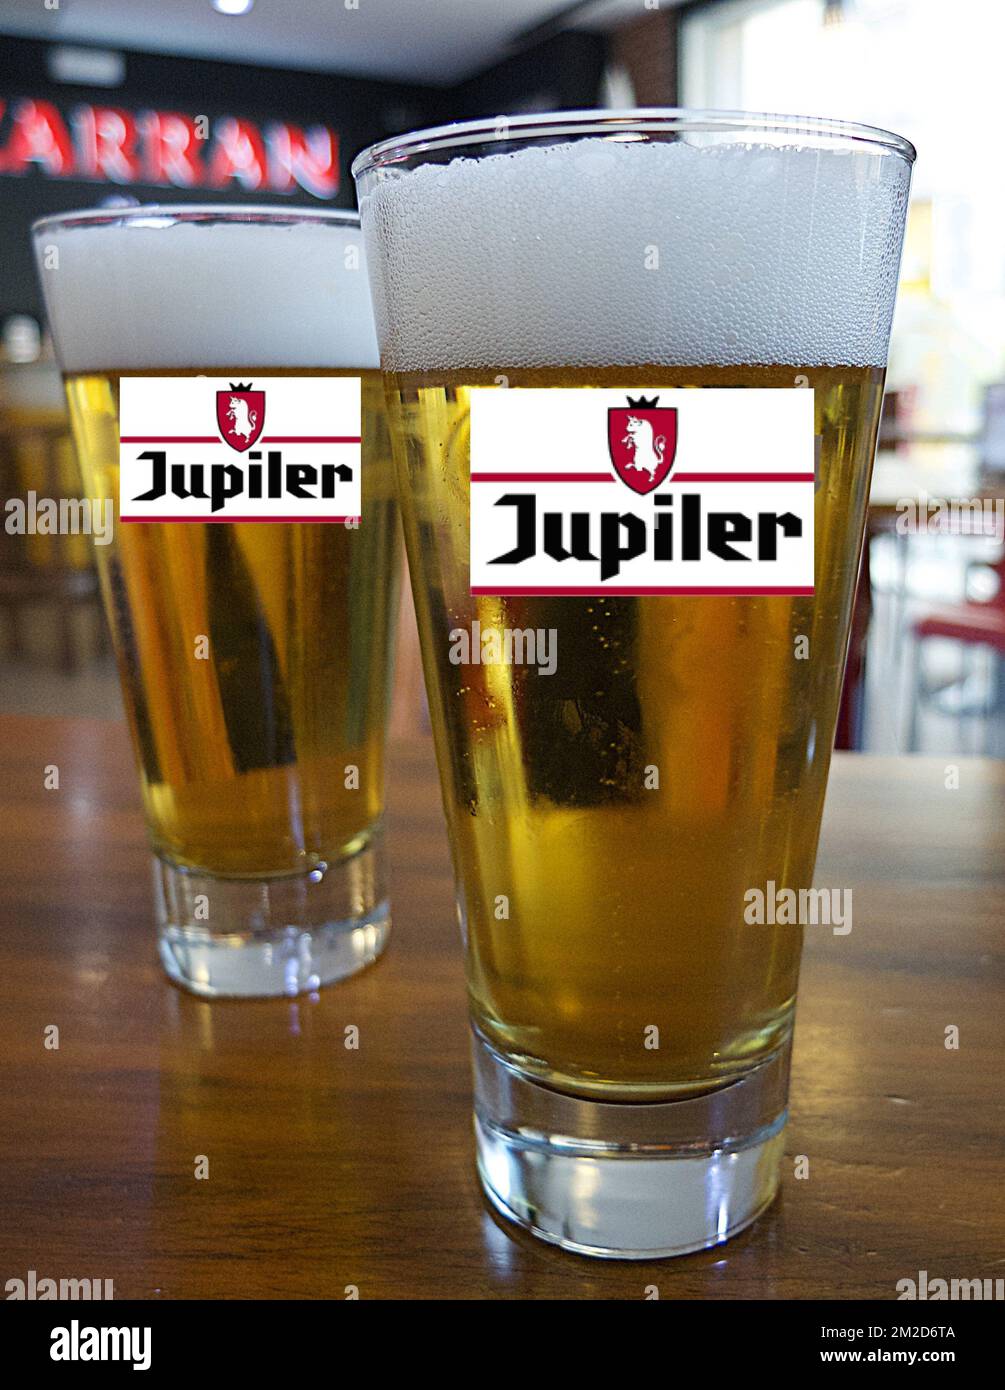 Béer Jupiler | Bière Jupiler 20/02/2018 Stock Photo